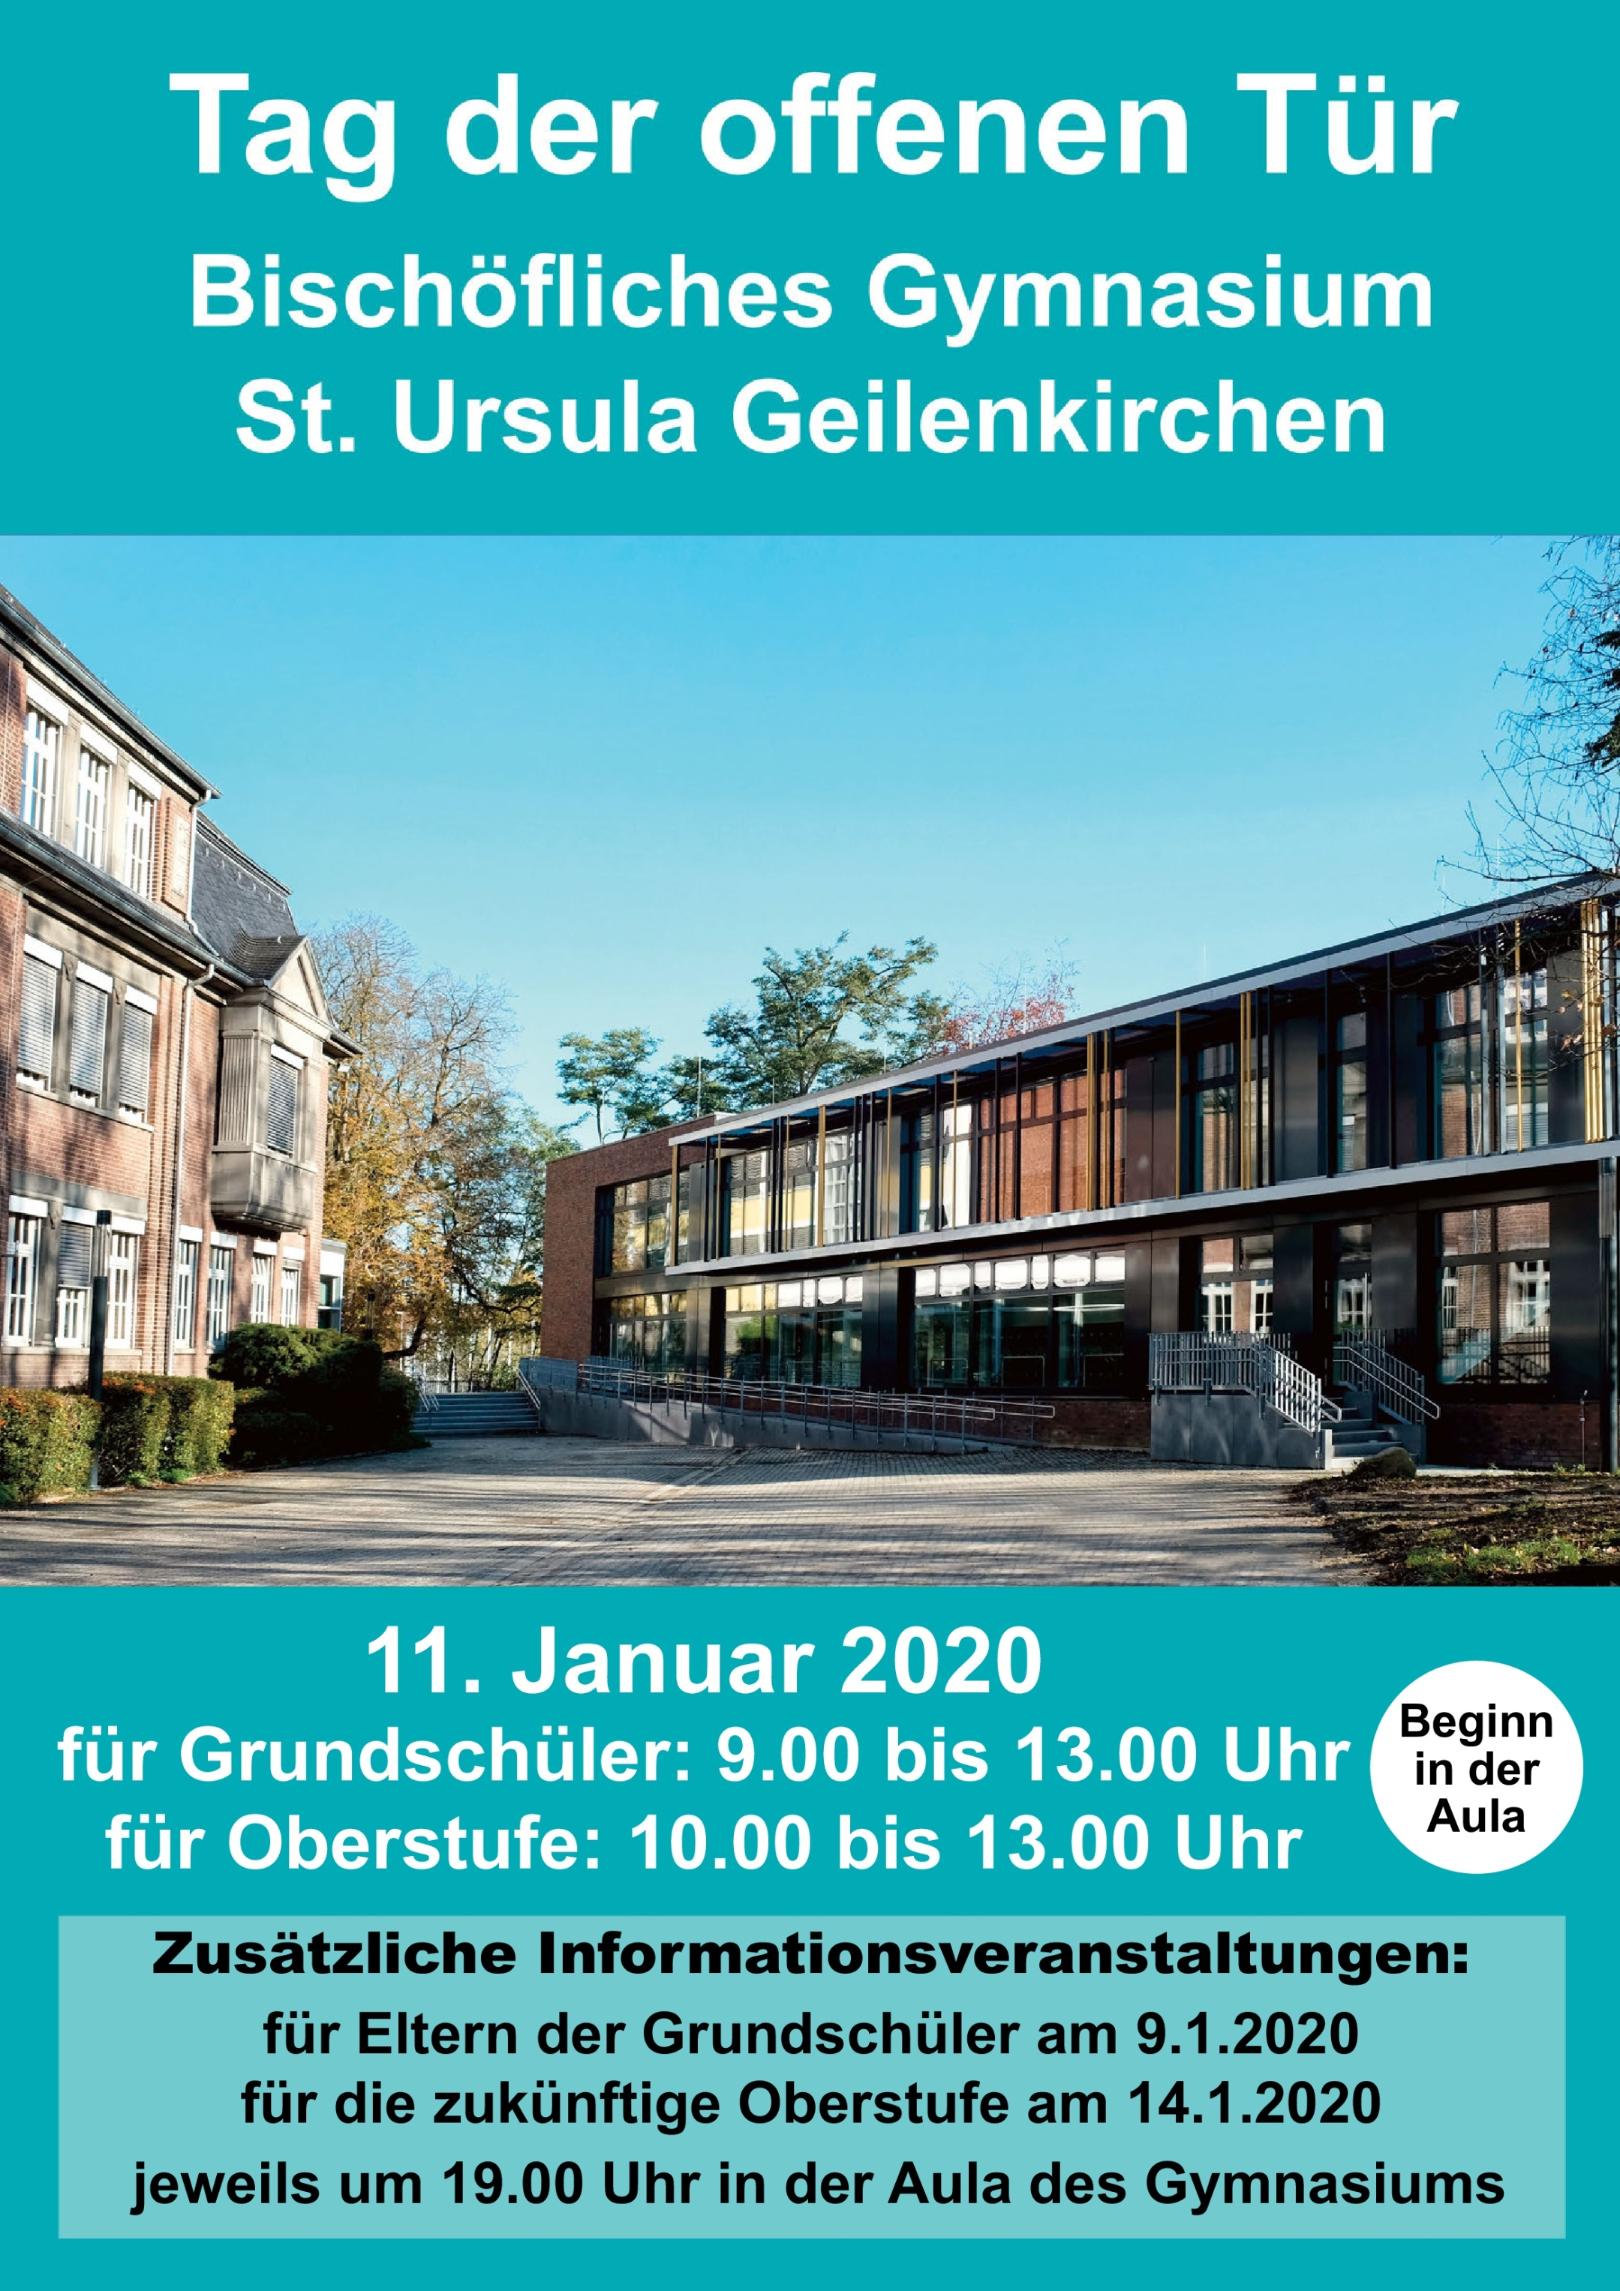 Tag der offenen Tür 2020 (c) Bischöfliches Gymnasium St. Ursula Geilenkirchen